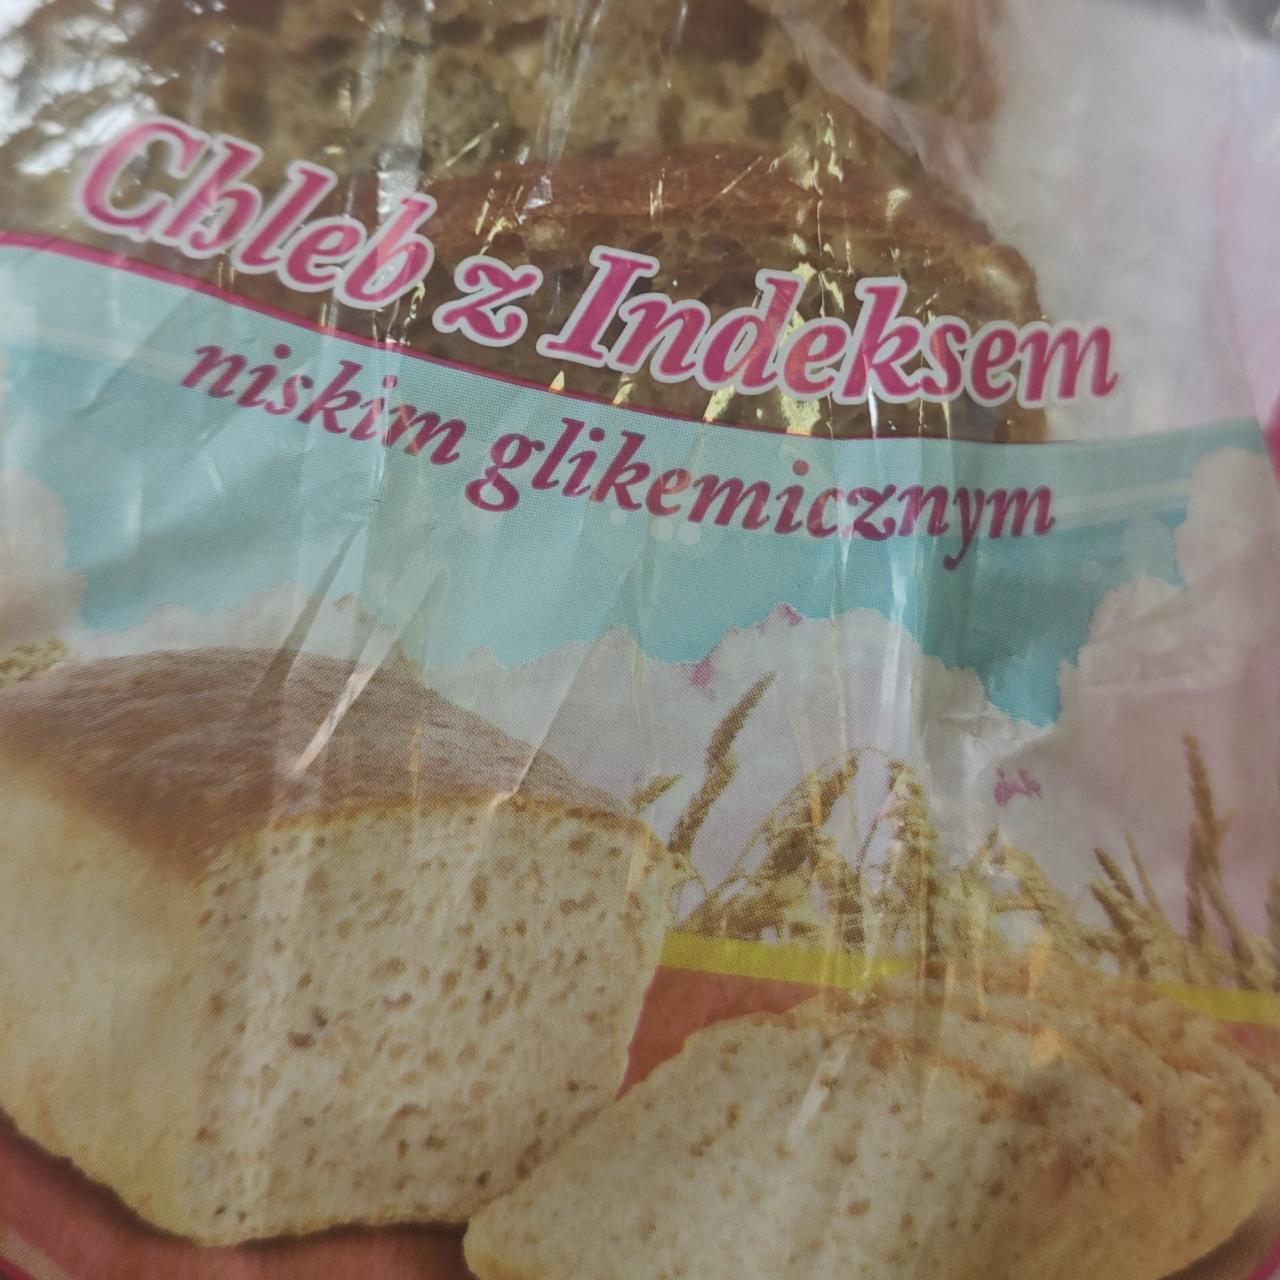 Zdjęcia - Chleb z Indeksem niskim glikemicznym Zgoda